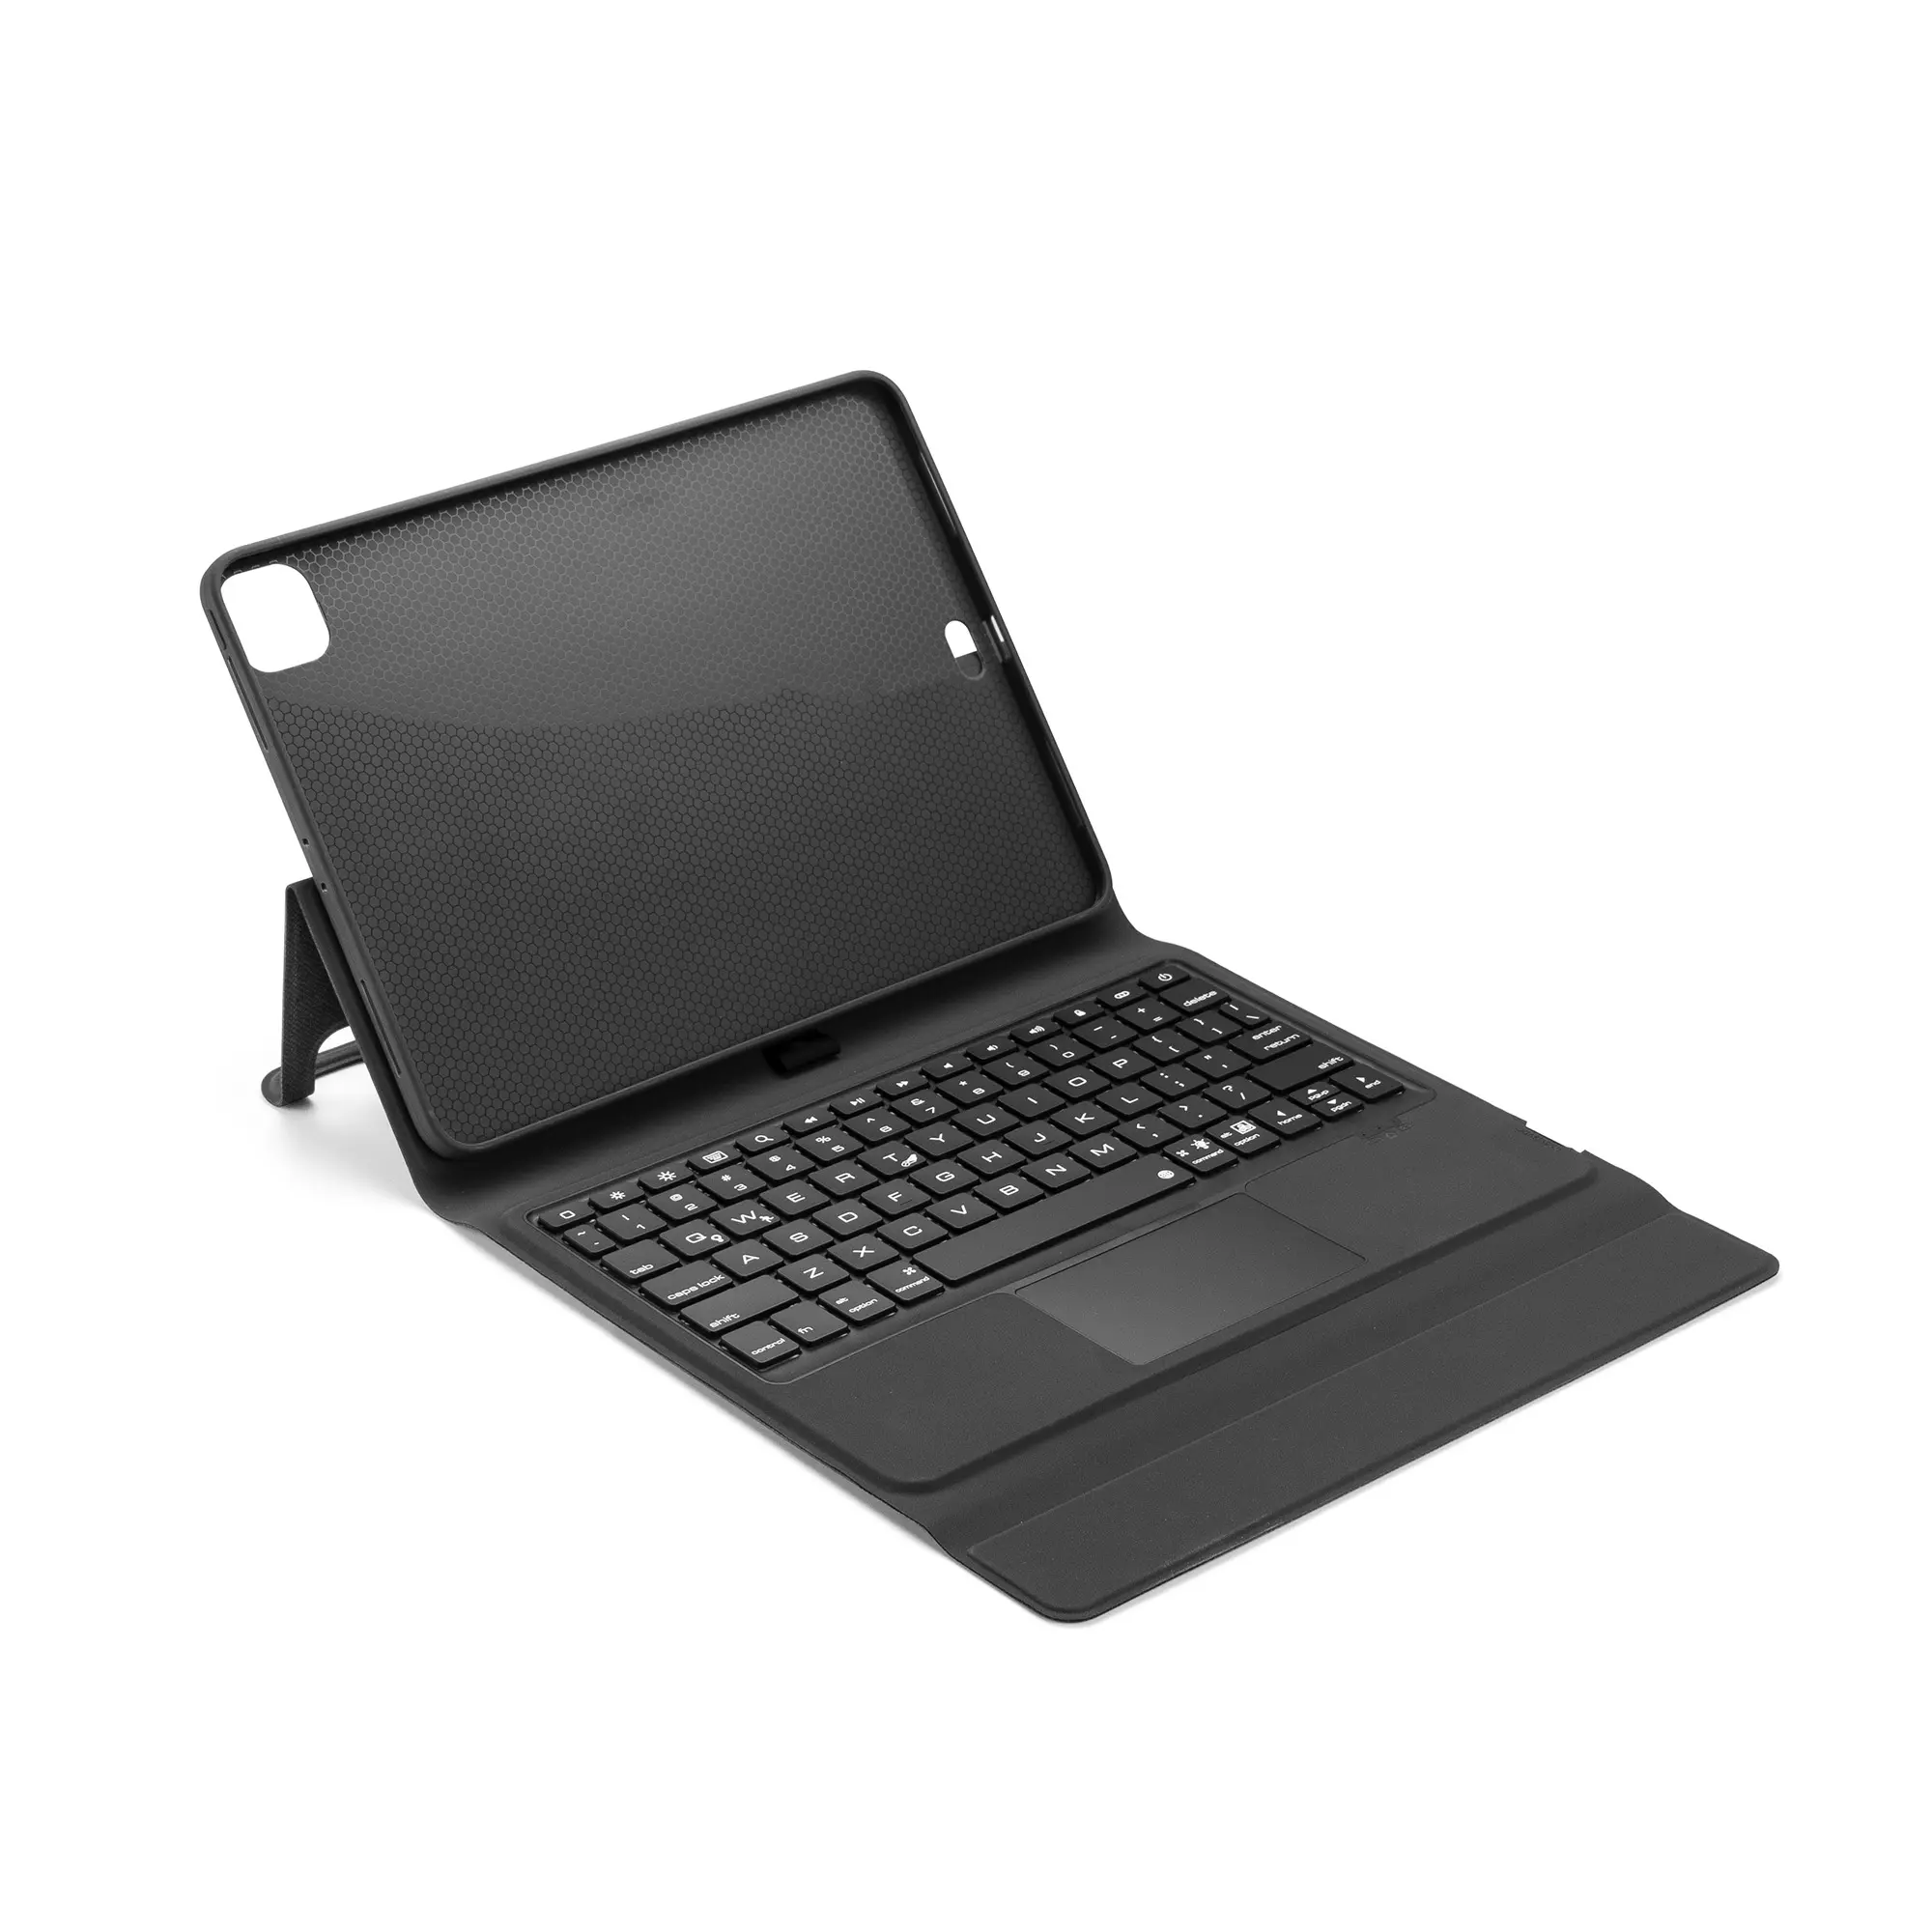 Gökkuşağı aydınlatmalı teclado kılıf ile katlanır kapak PU koruyucu kabuk için Touchpad klavye ile 2020 Ipad 11